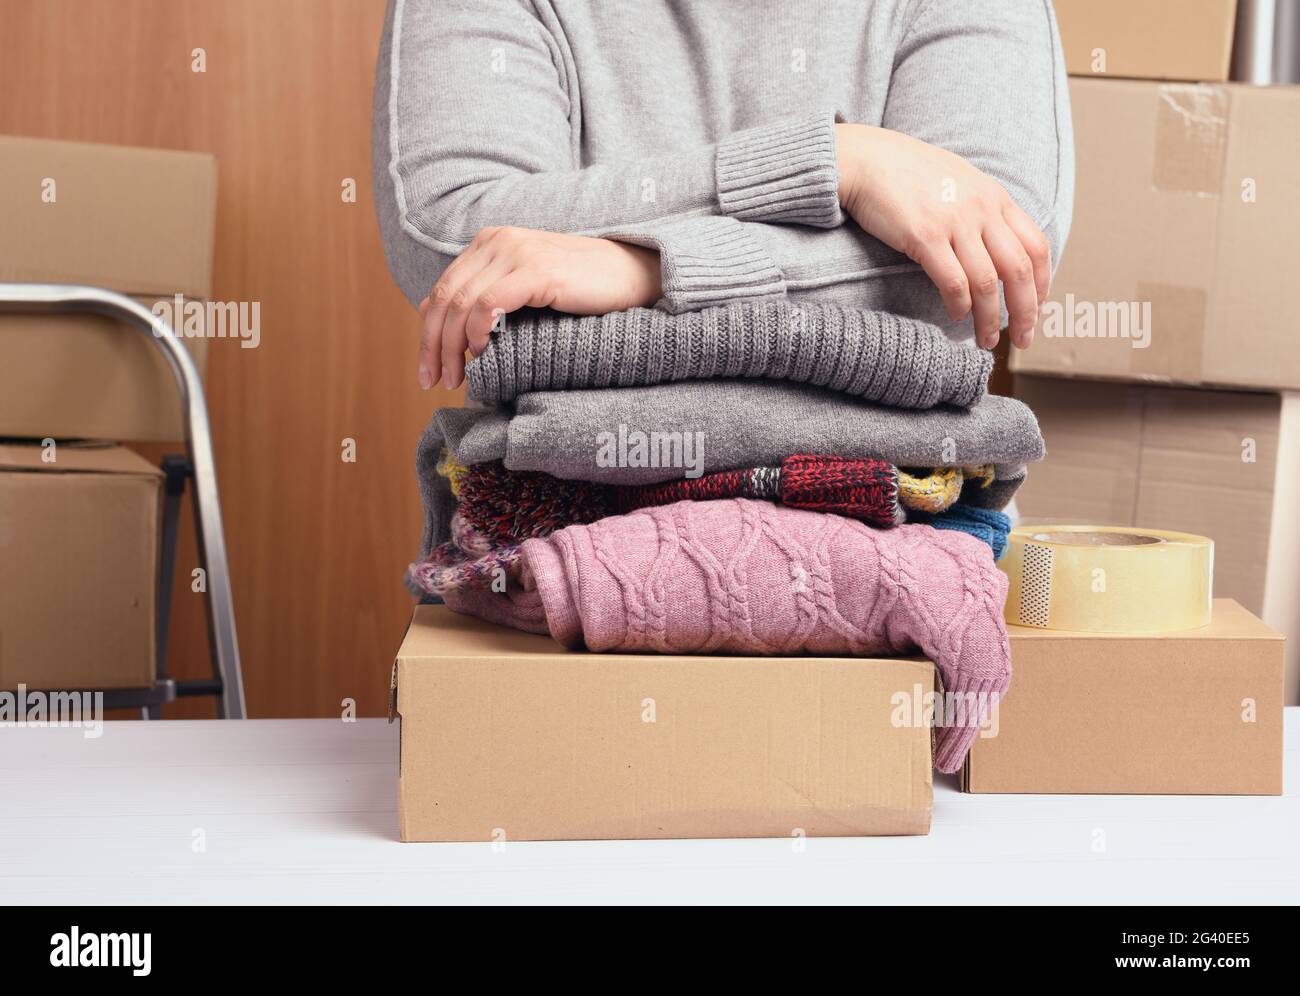 Donna in un maglione grigio sta imballando i vestiti in una scatola, il concetto di assistenza e di volontariato, in movimento Foto Stock